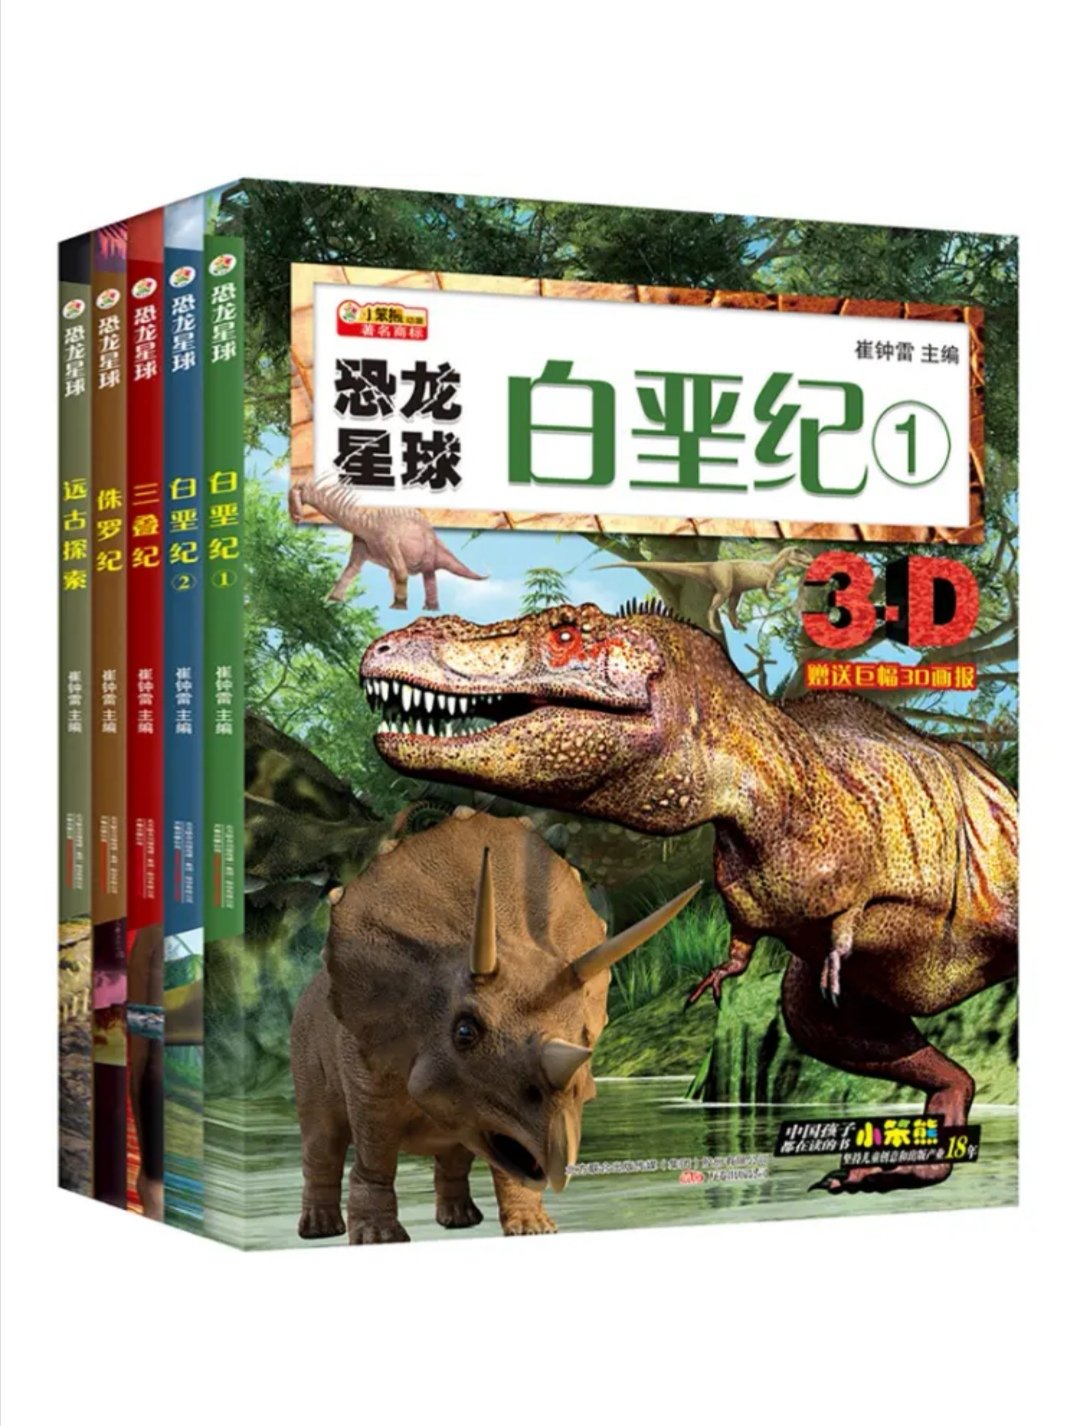 这个书，没有解释图片恐龙的名称，只是有个图片，没有说明恐龙叫什么名字，不好的书本。